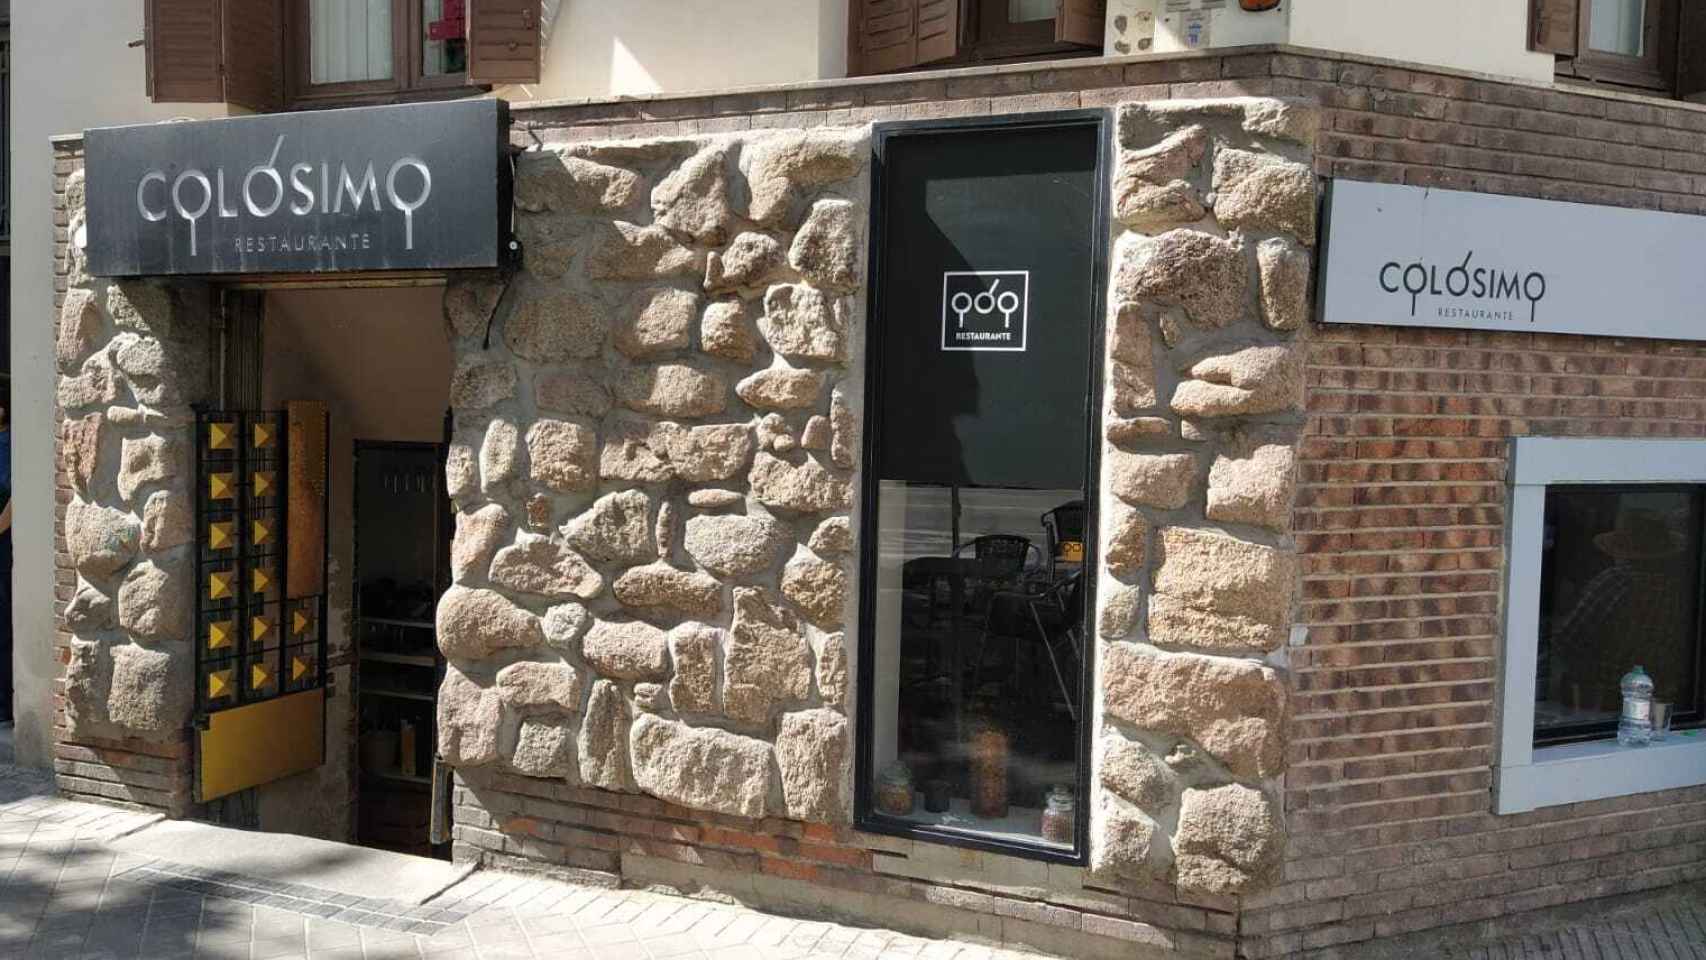 El restaurante Colósimo, situado en el número 67 de la calle de José Ortega y Gasset.